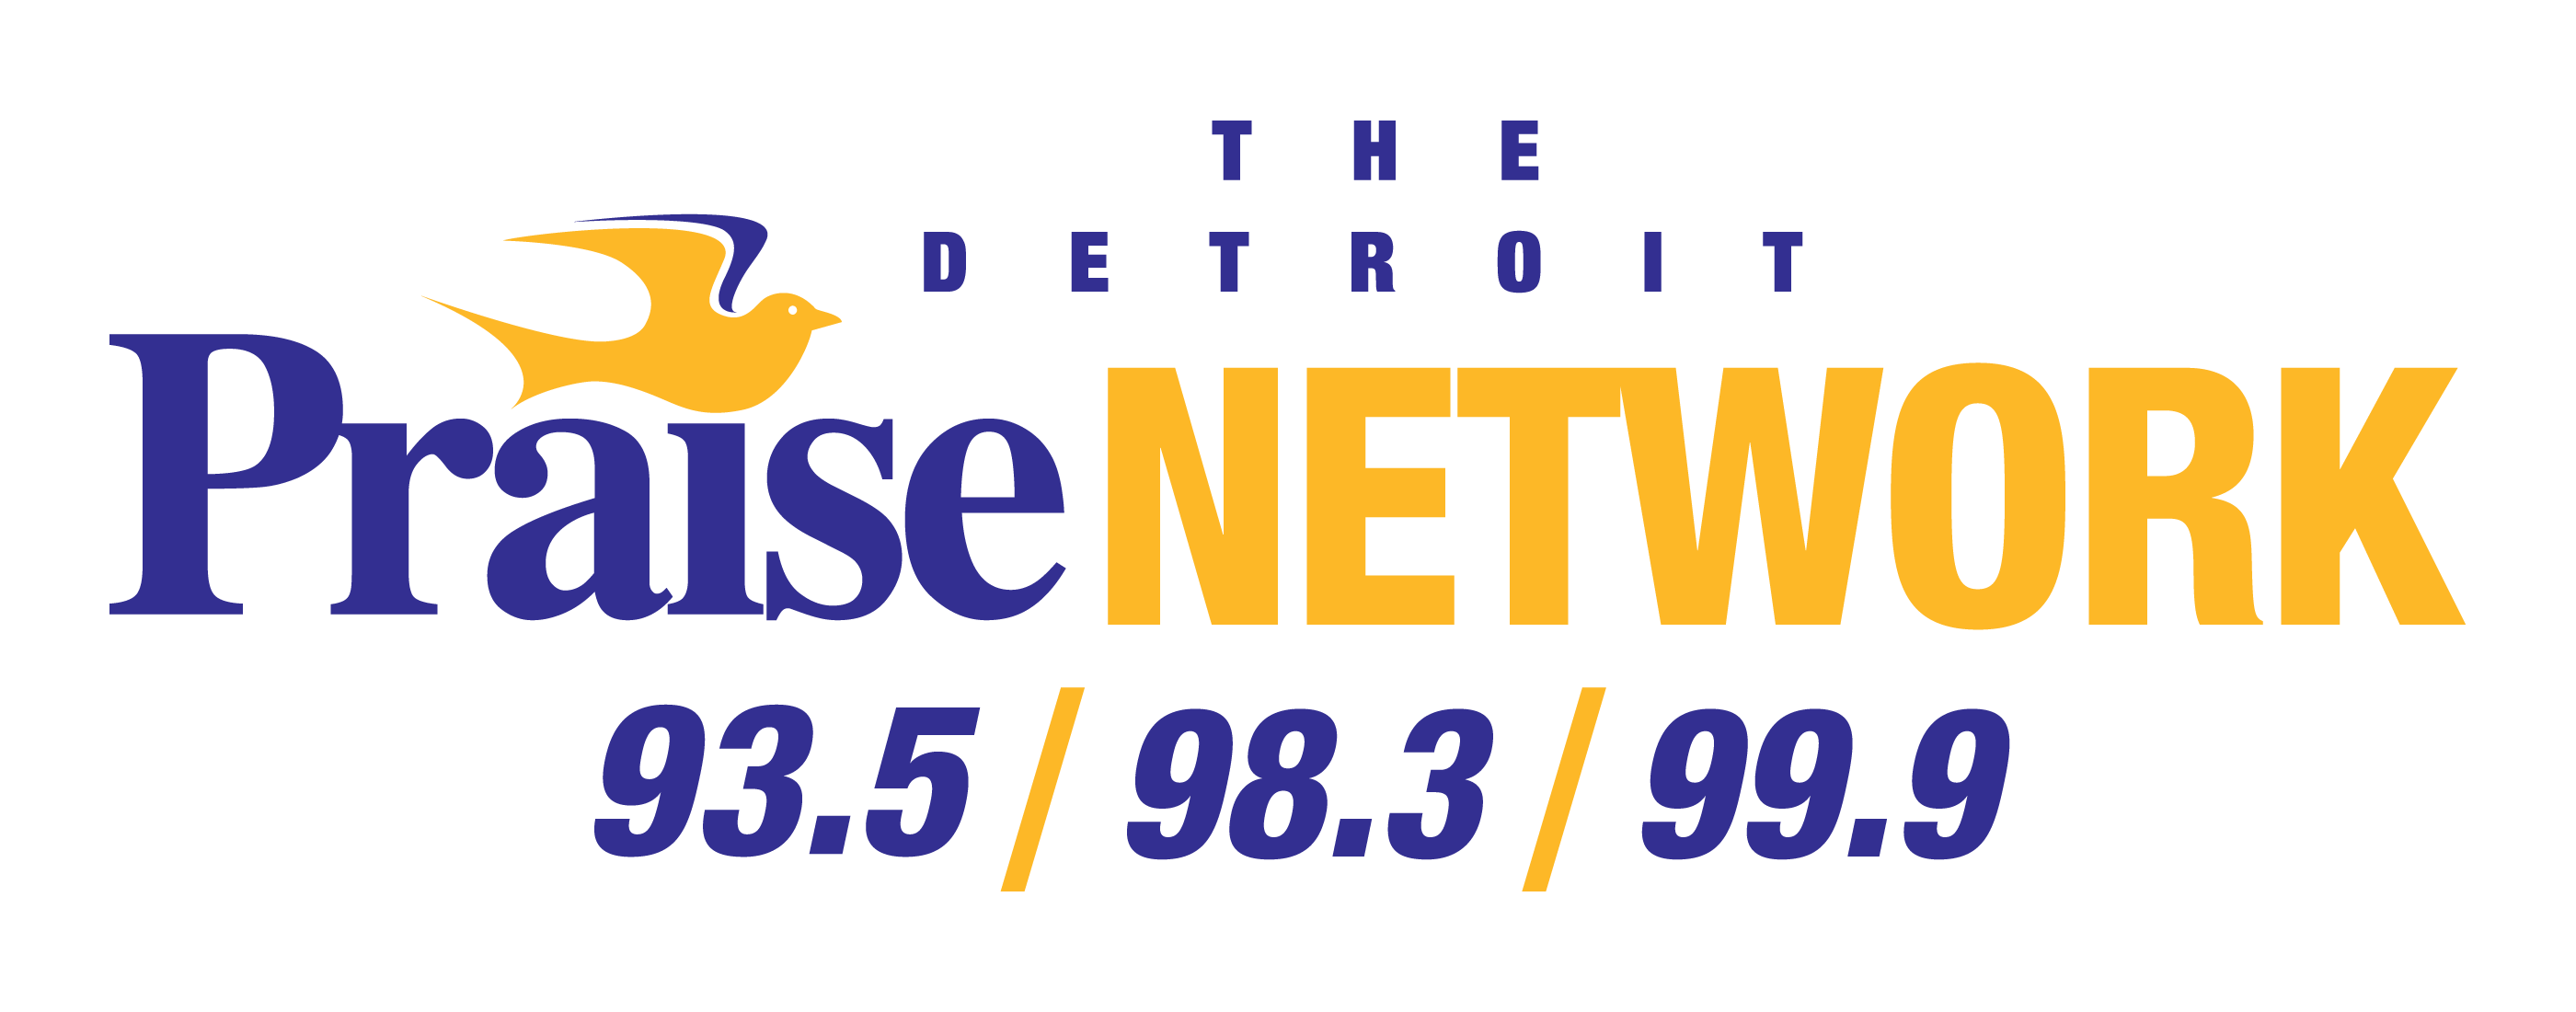 Beasley Media - Detroit Praise Network